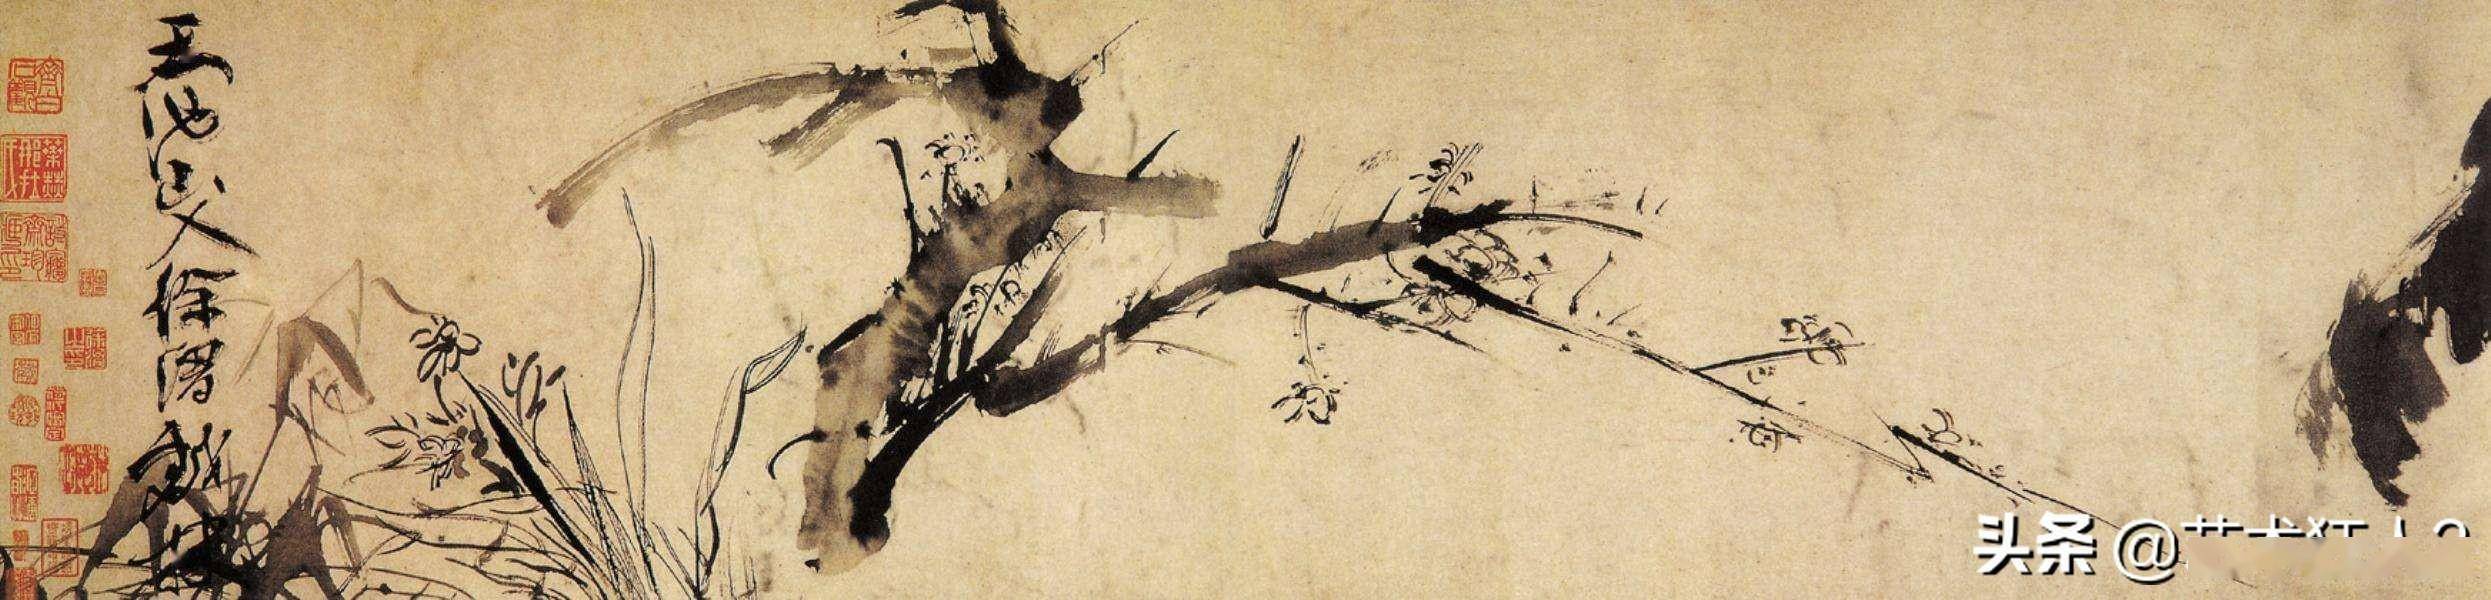 中国古代大写意画家图片